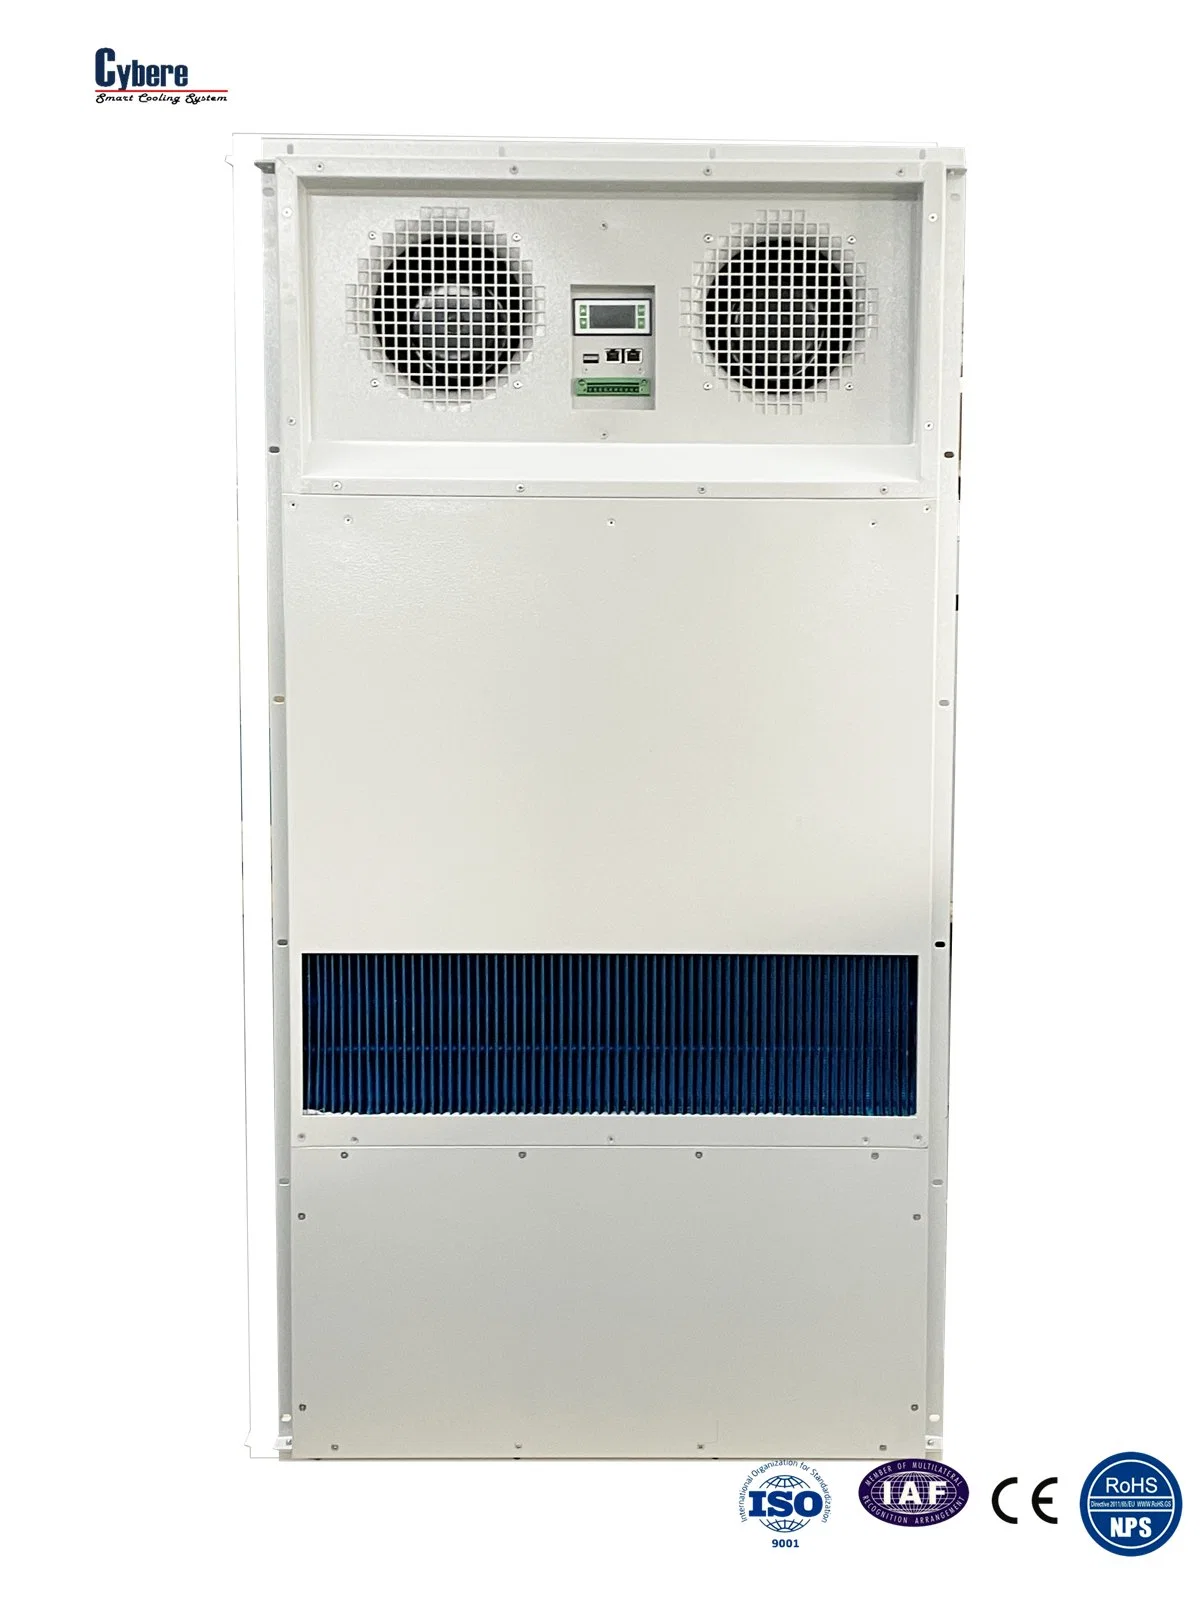 DC 260W/K Luft-Luft-Wärmetauscher für Outdoor Telecom Passive Kühlung Des Gehäuses